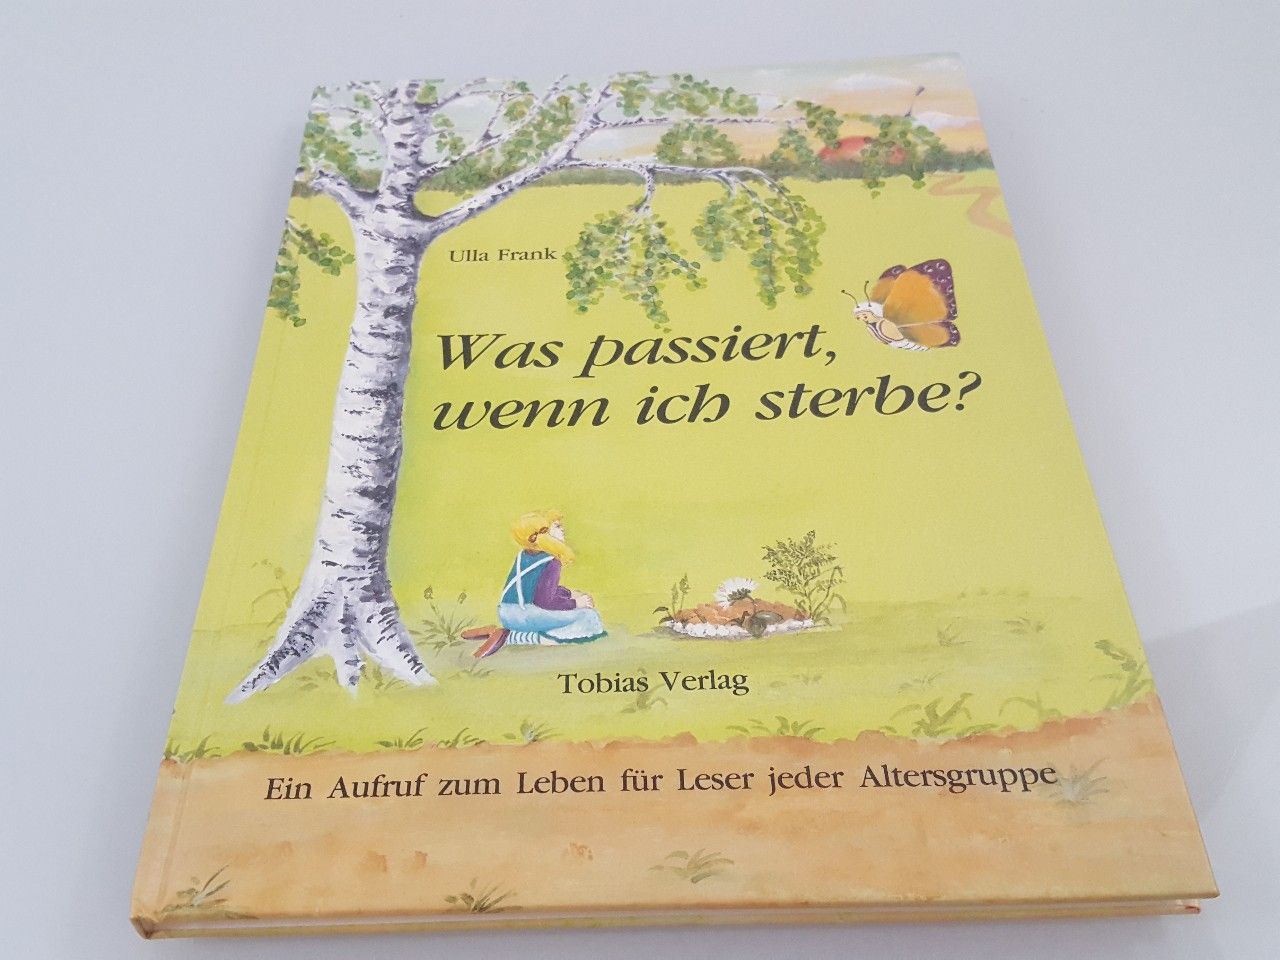 Was passiert, wenn ich sterbe? : Ein Aufruf zum Leben für Leser jeder Altersgruppe / Ulla Frank - Frank, Ulla